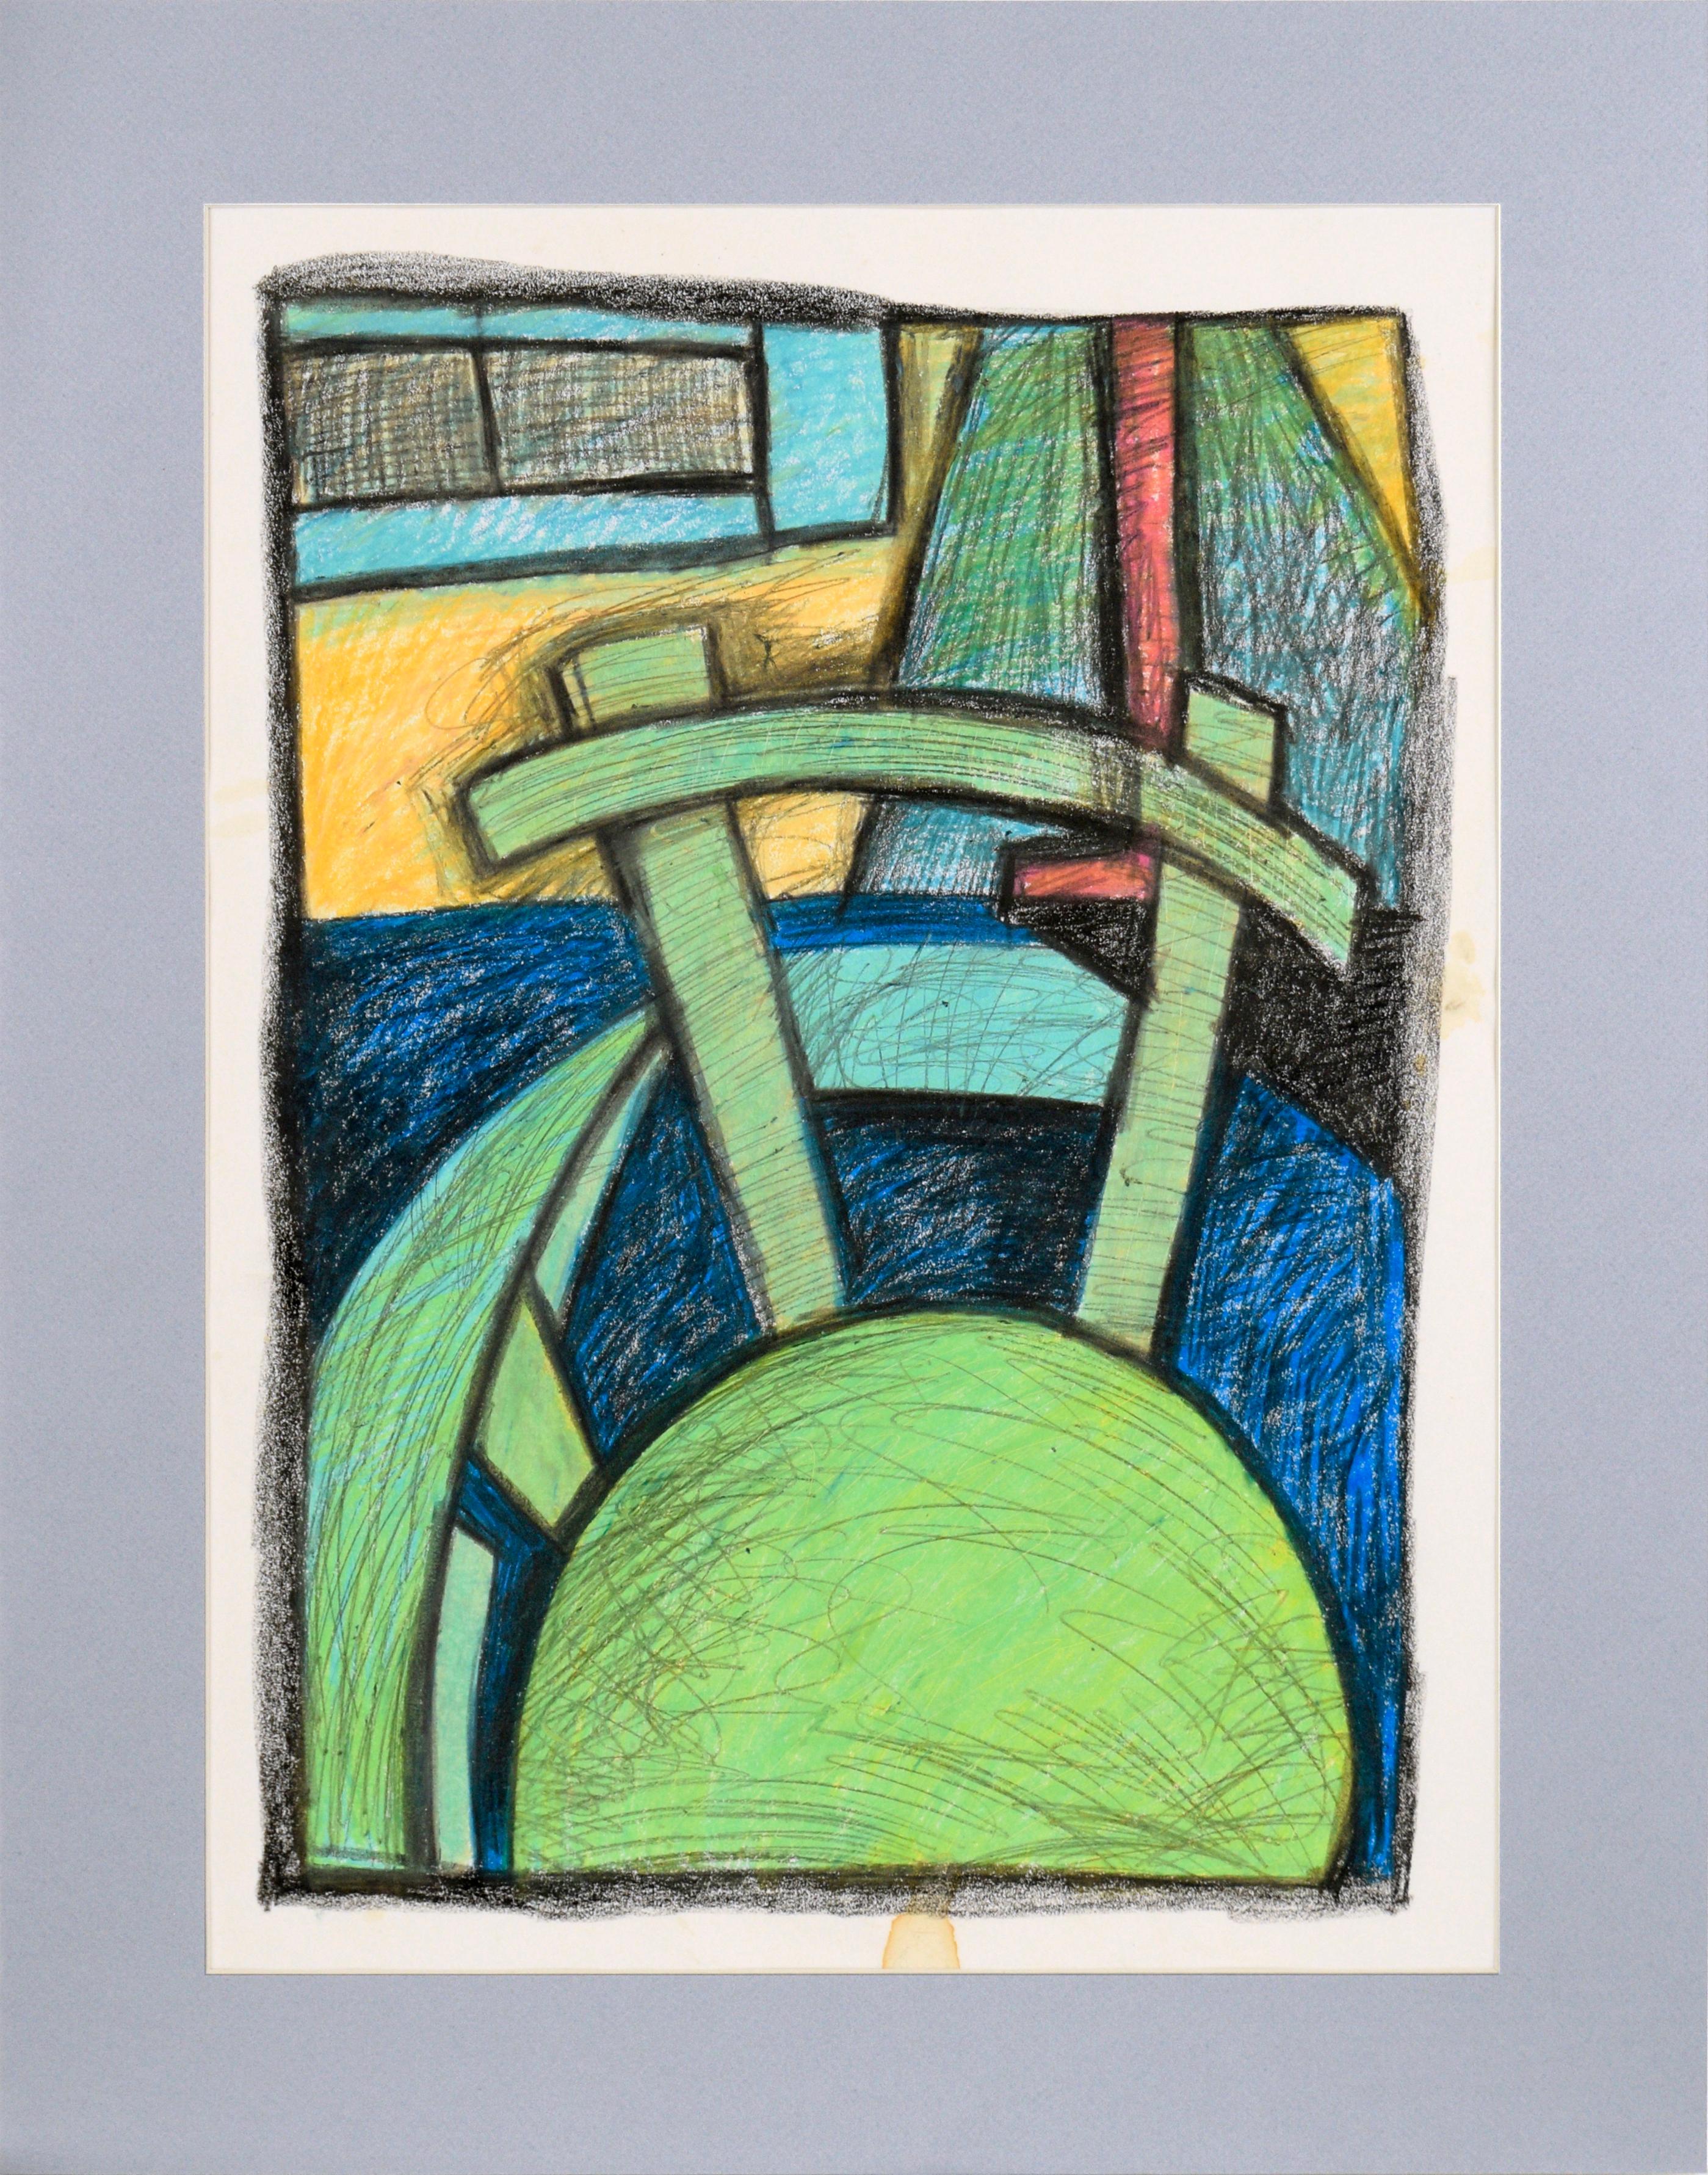 Chaise de bureau - Scène d'intérieur cubiste au crayon sur papier